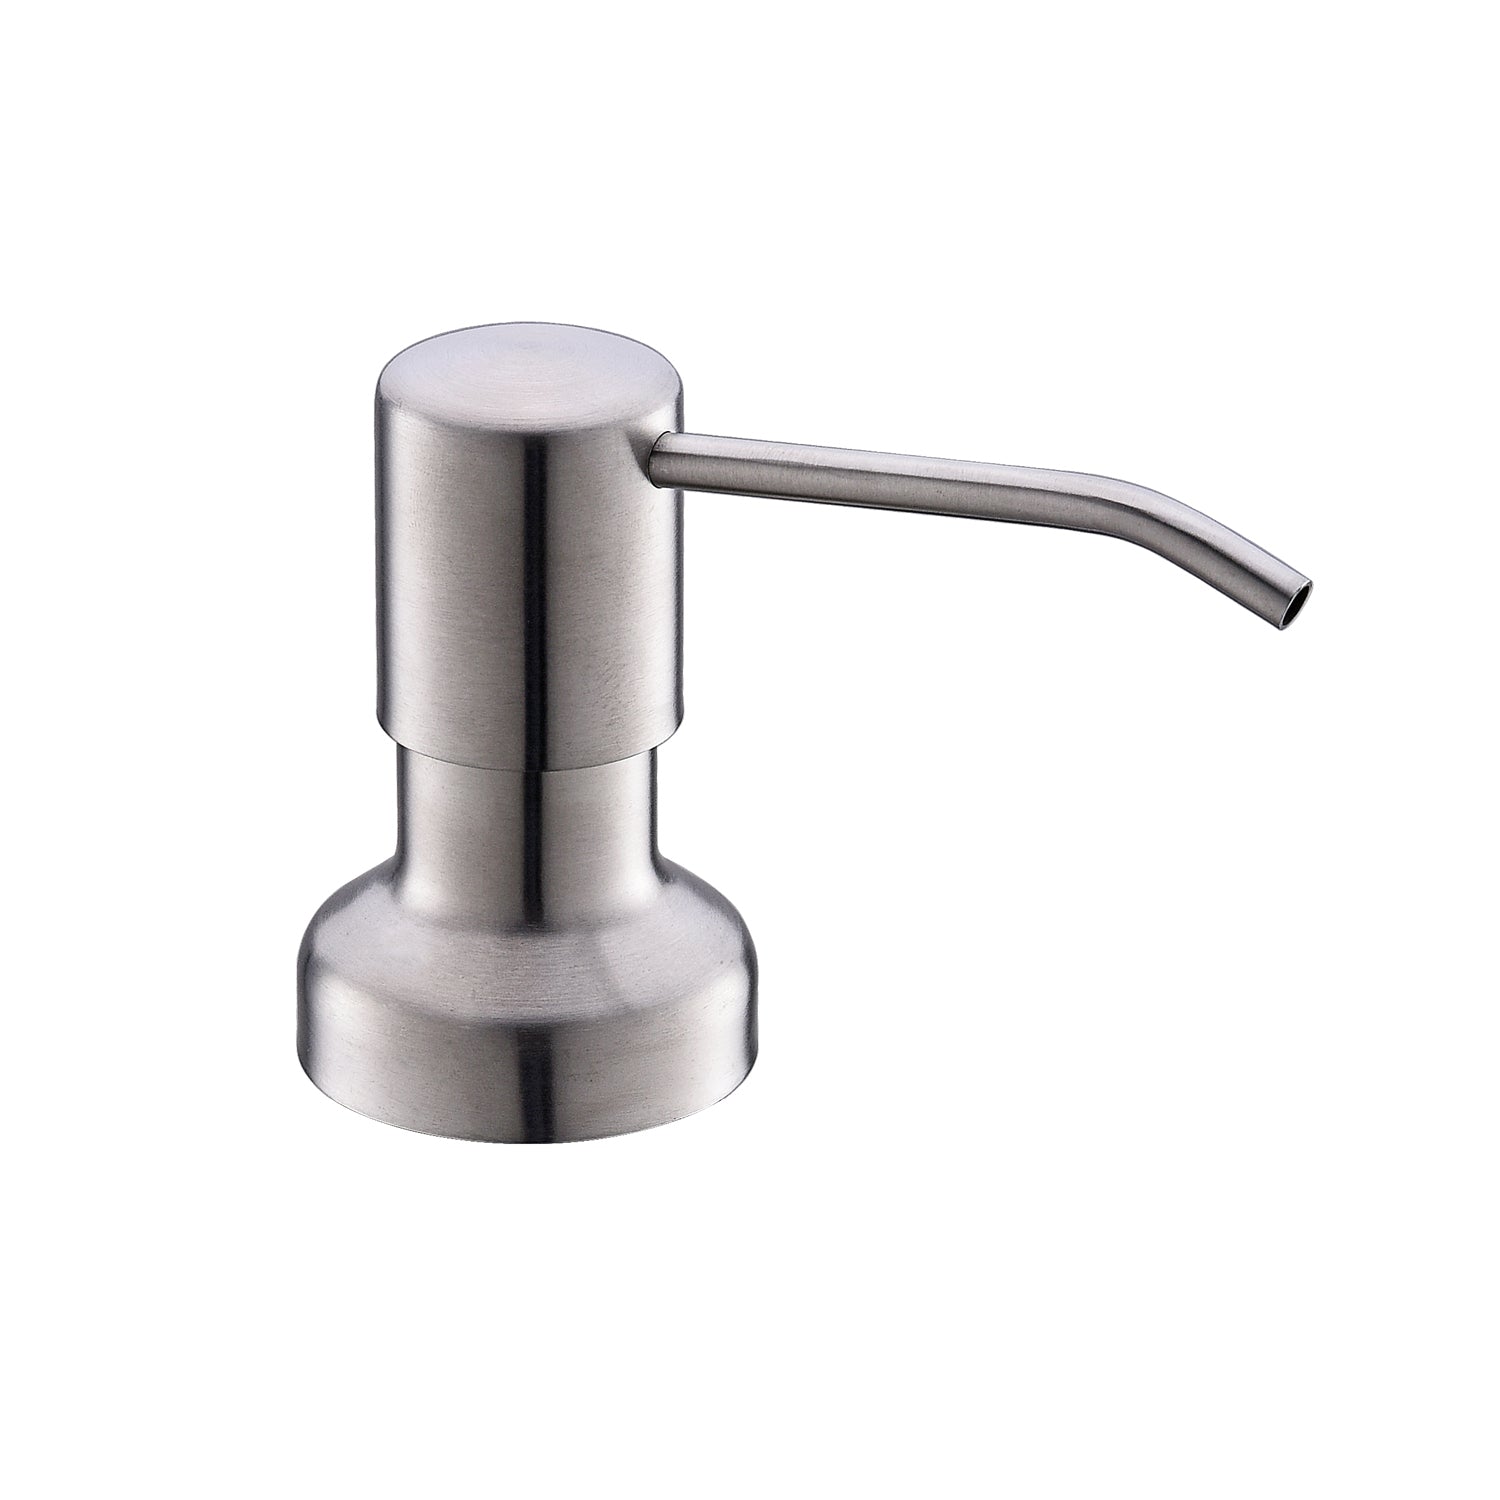 DAX Round Kitchen Sink Soap Dispenser, Deck Mount, Brass Body, Brushed Nickel Finish, 2-1/2 x 12-3/8 x 3-5/8 Inches  (DAX-1002-BN)